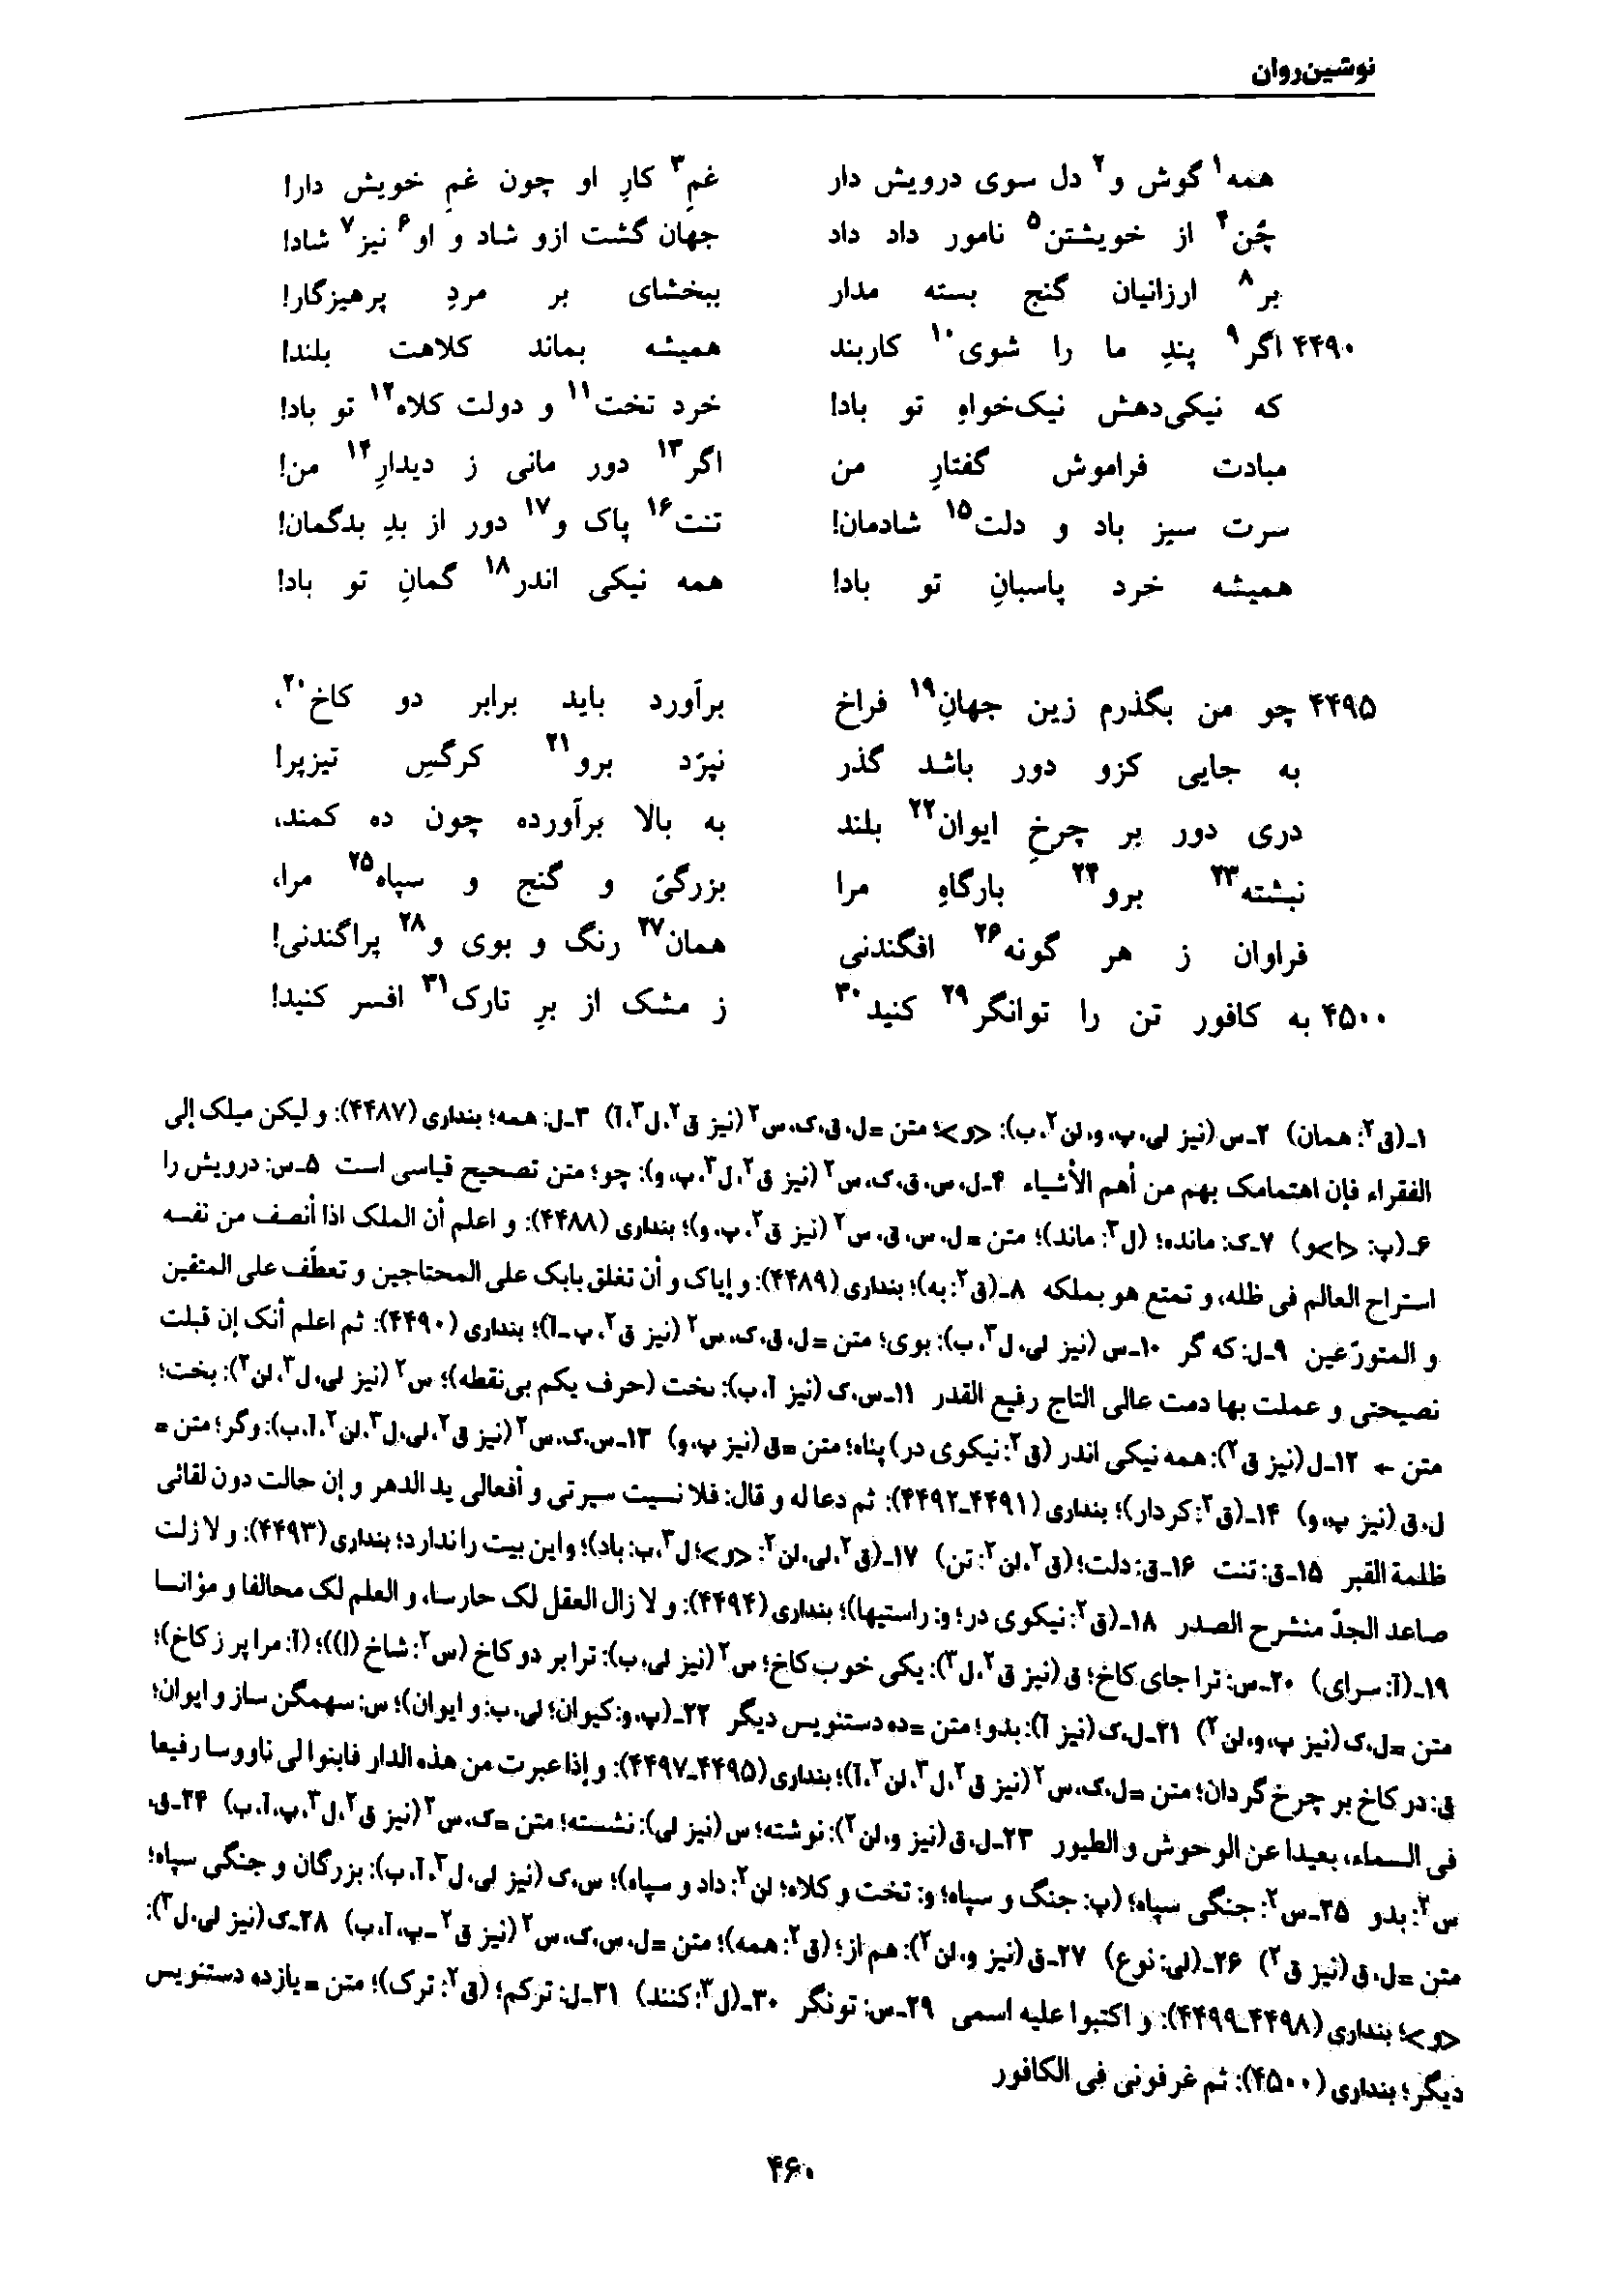 vol. 7, p. 460